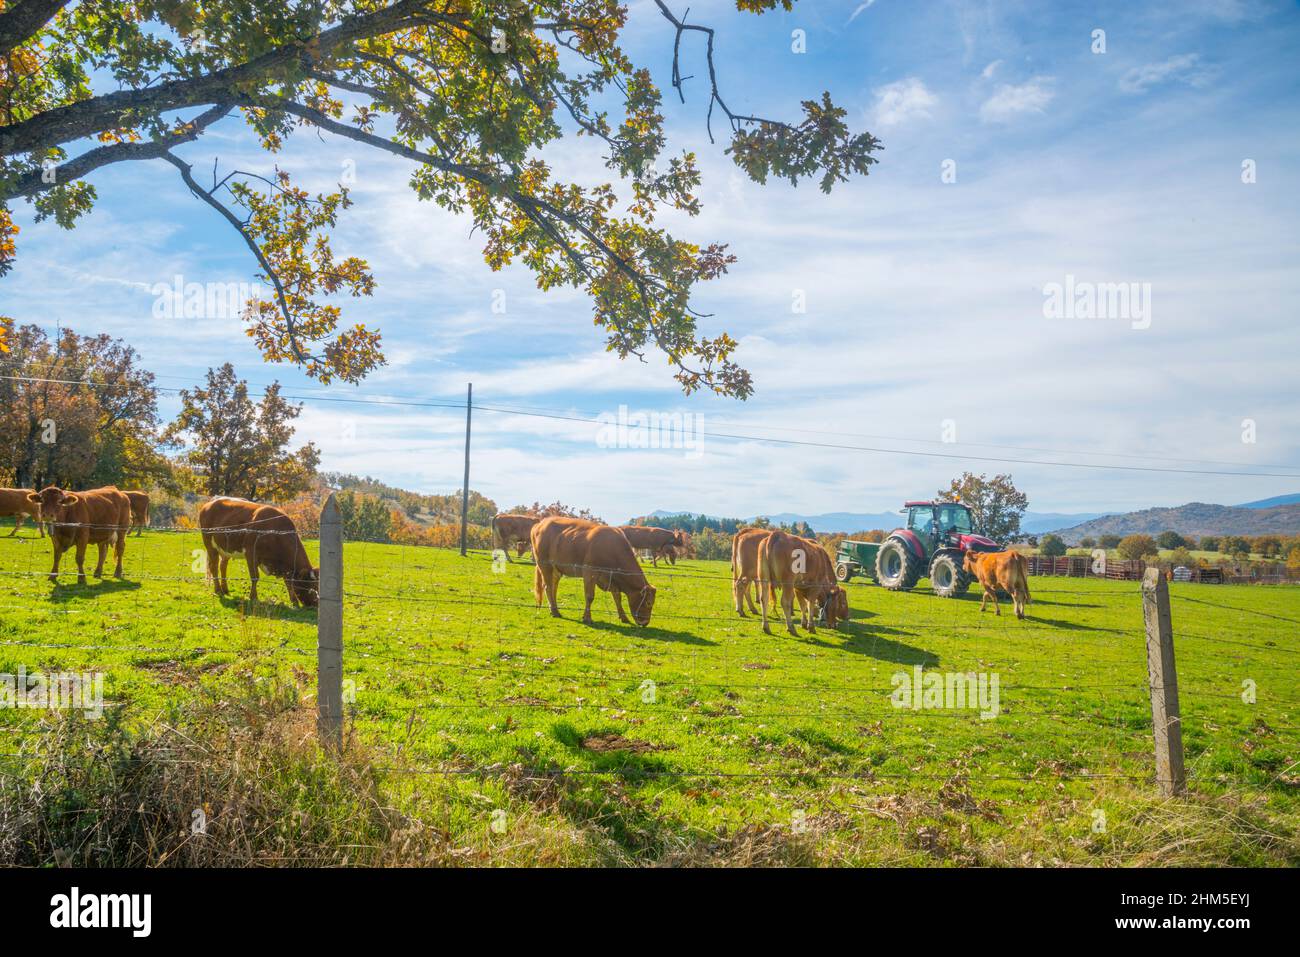 Cows in a farm. Montejo de la Sierra, Madrid province, Spain. Stock Photo